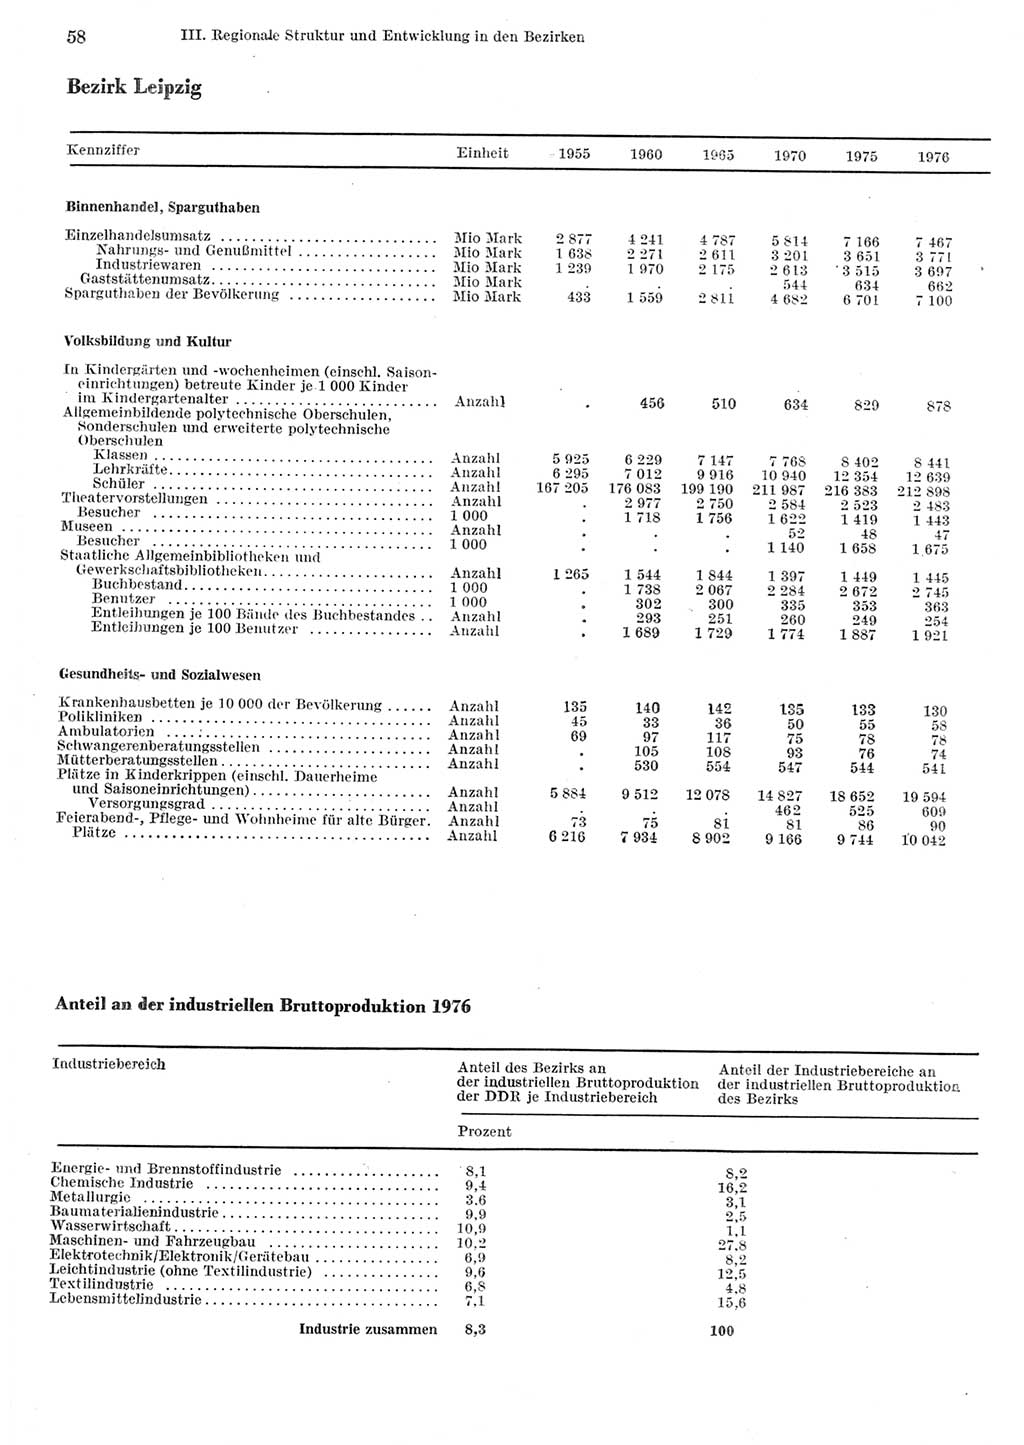 Statistisches Jahrbuch der Deutschen Demokratischen Republik (DDR) 1977, Seite 58 (Stat. Jb. DDR 1977, S. 58)